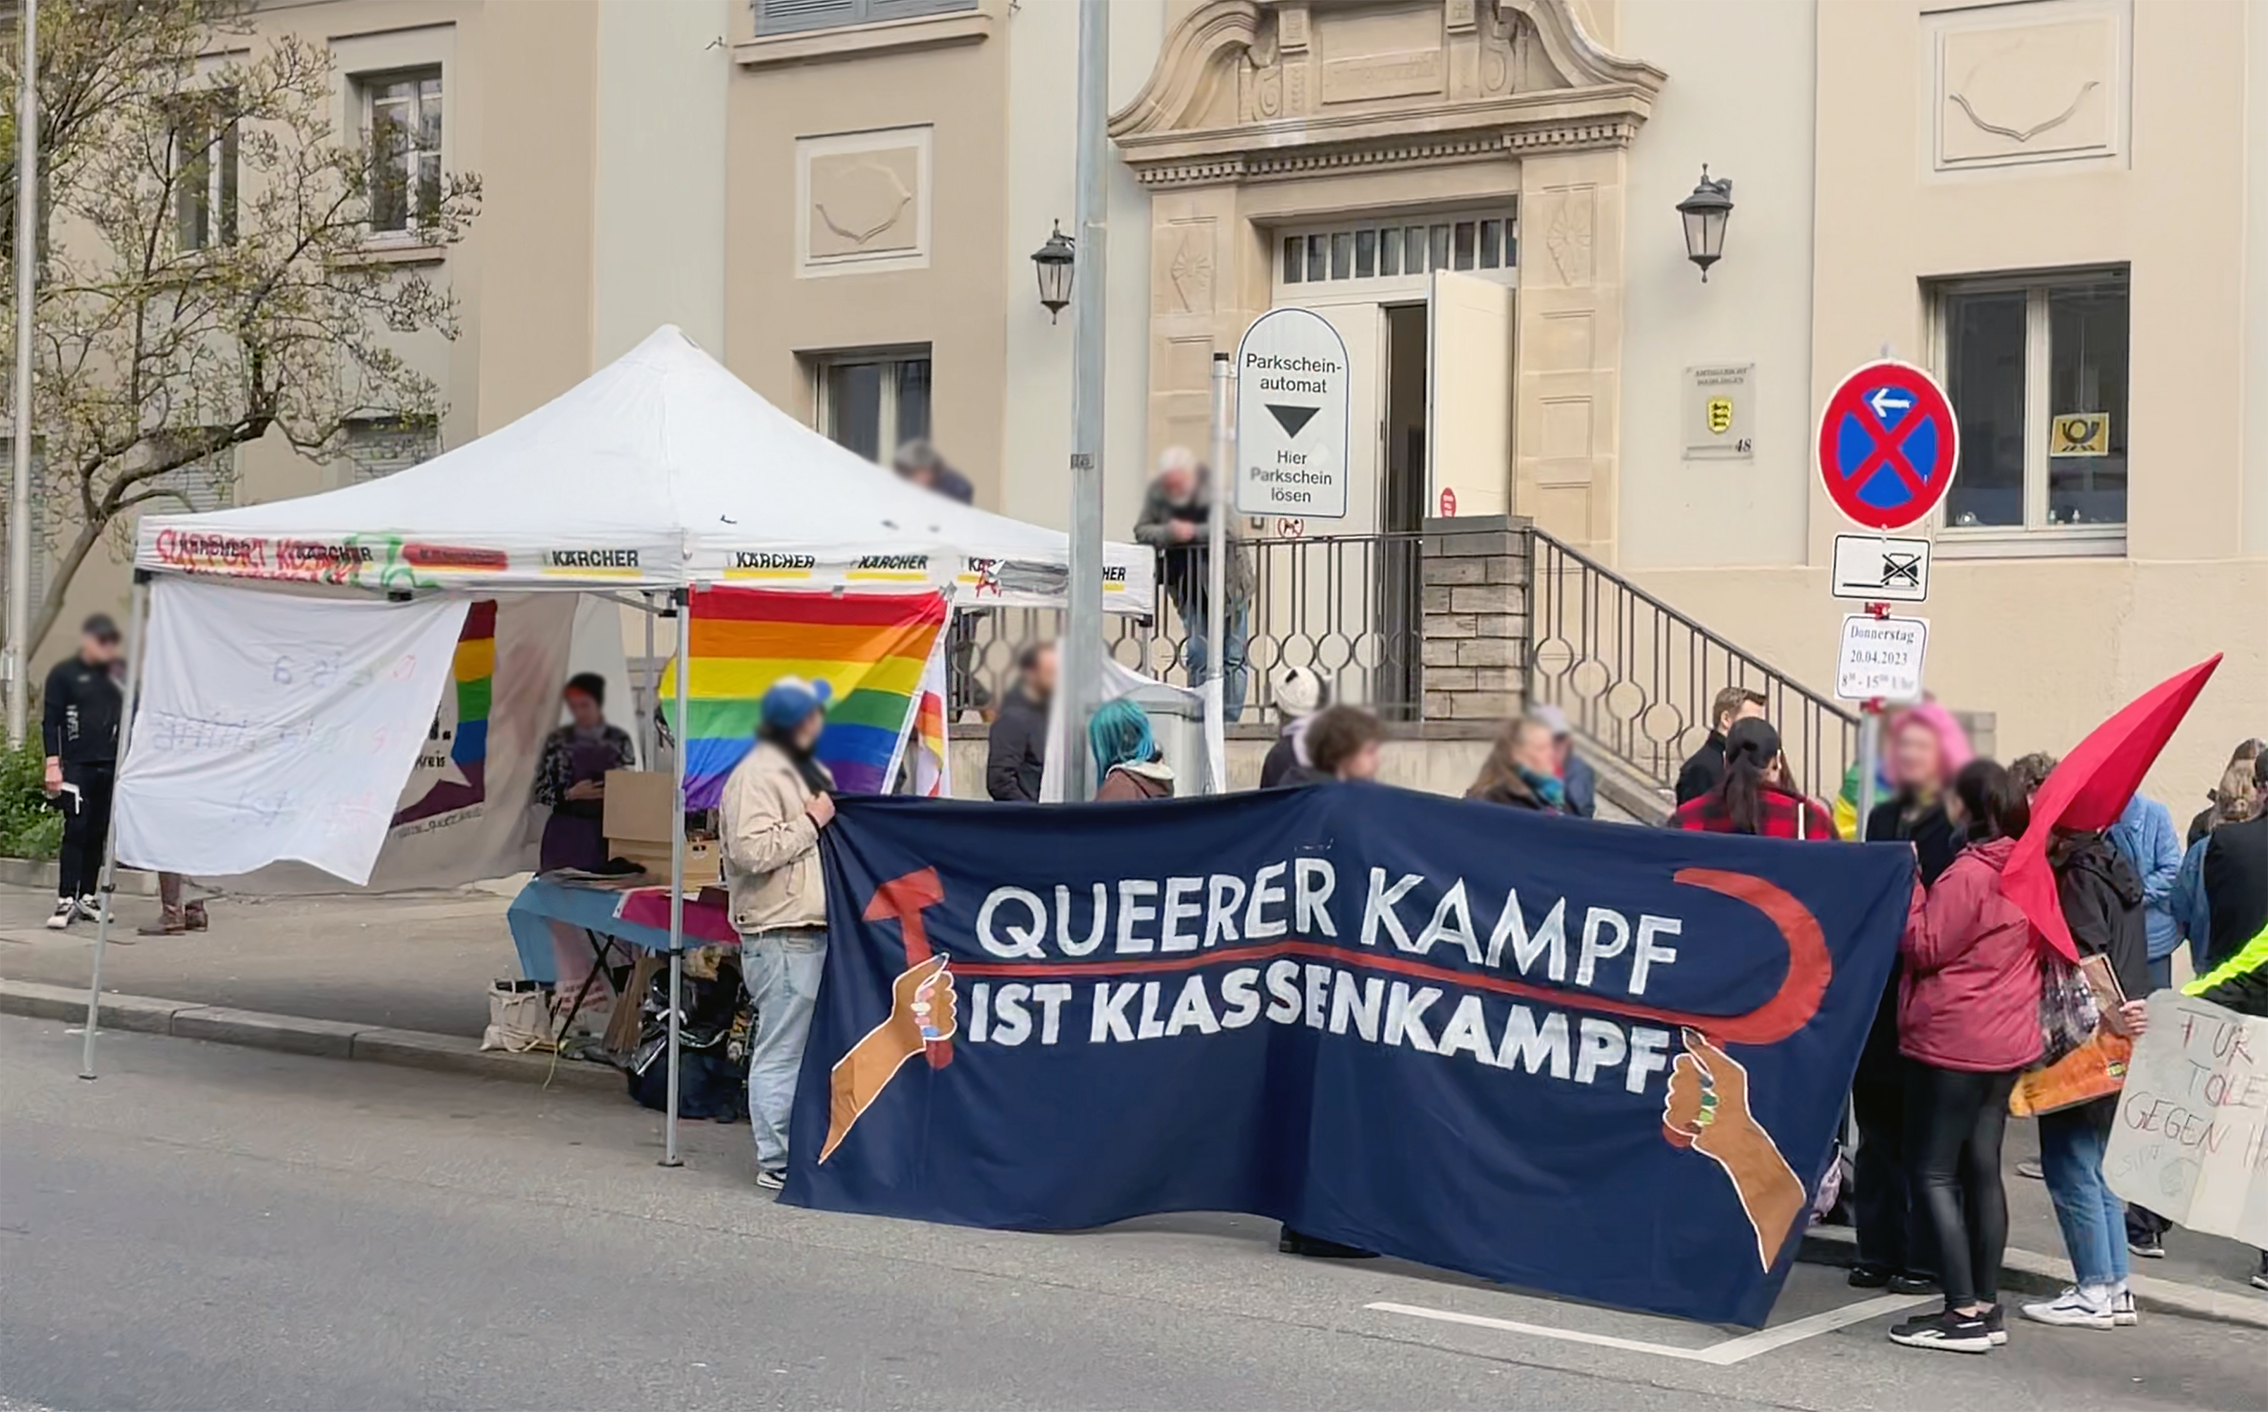 Stuttgart Pride - Aktuell bei Stuttgart PRIDE